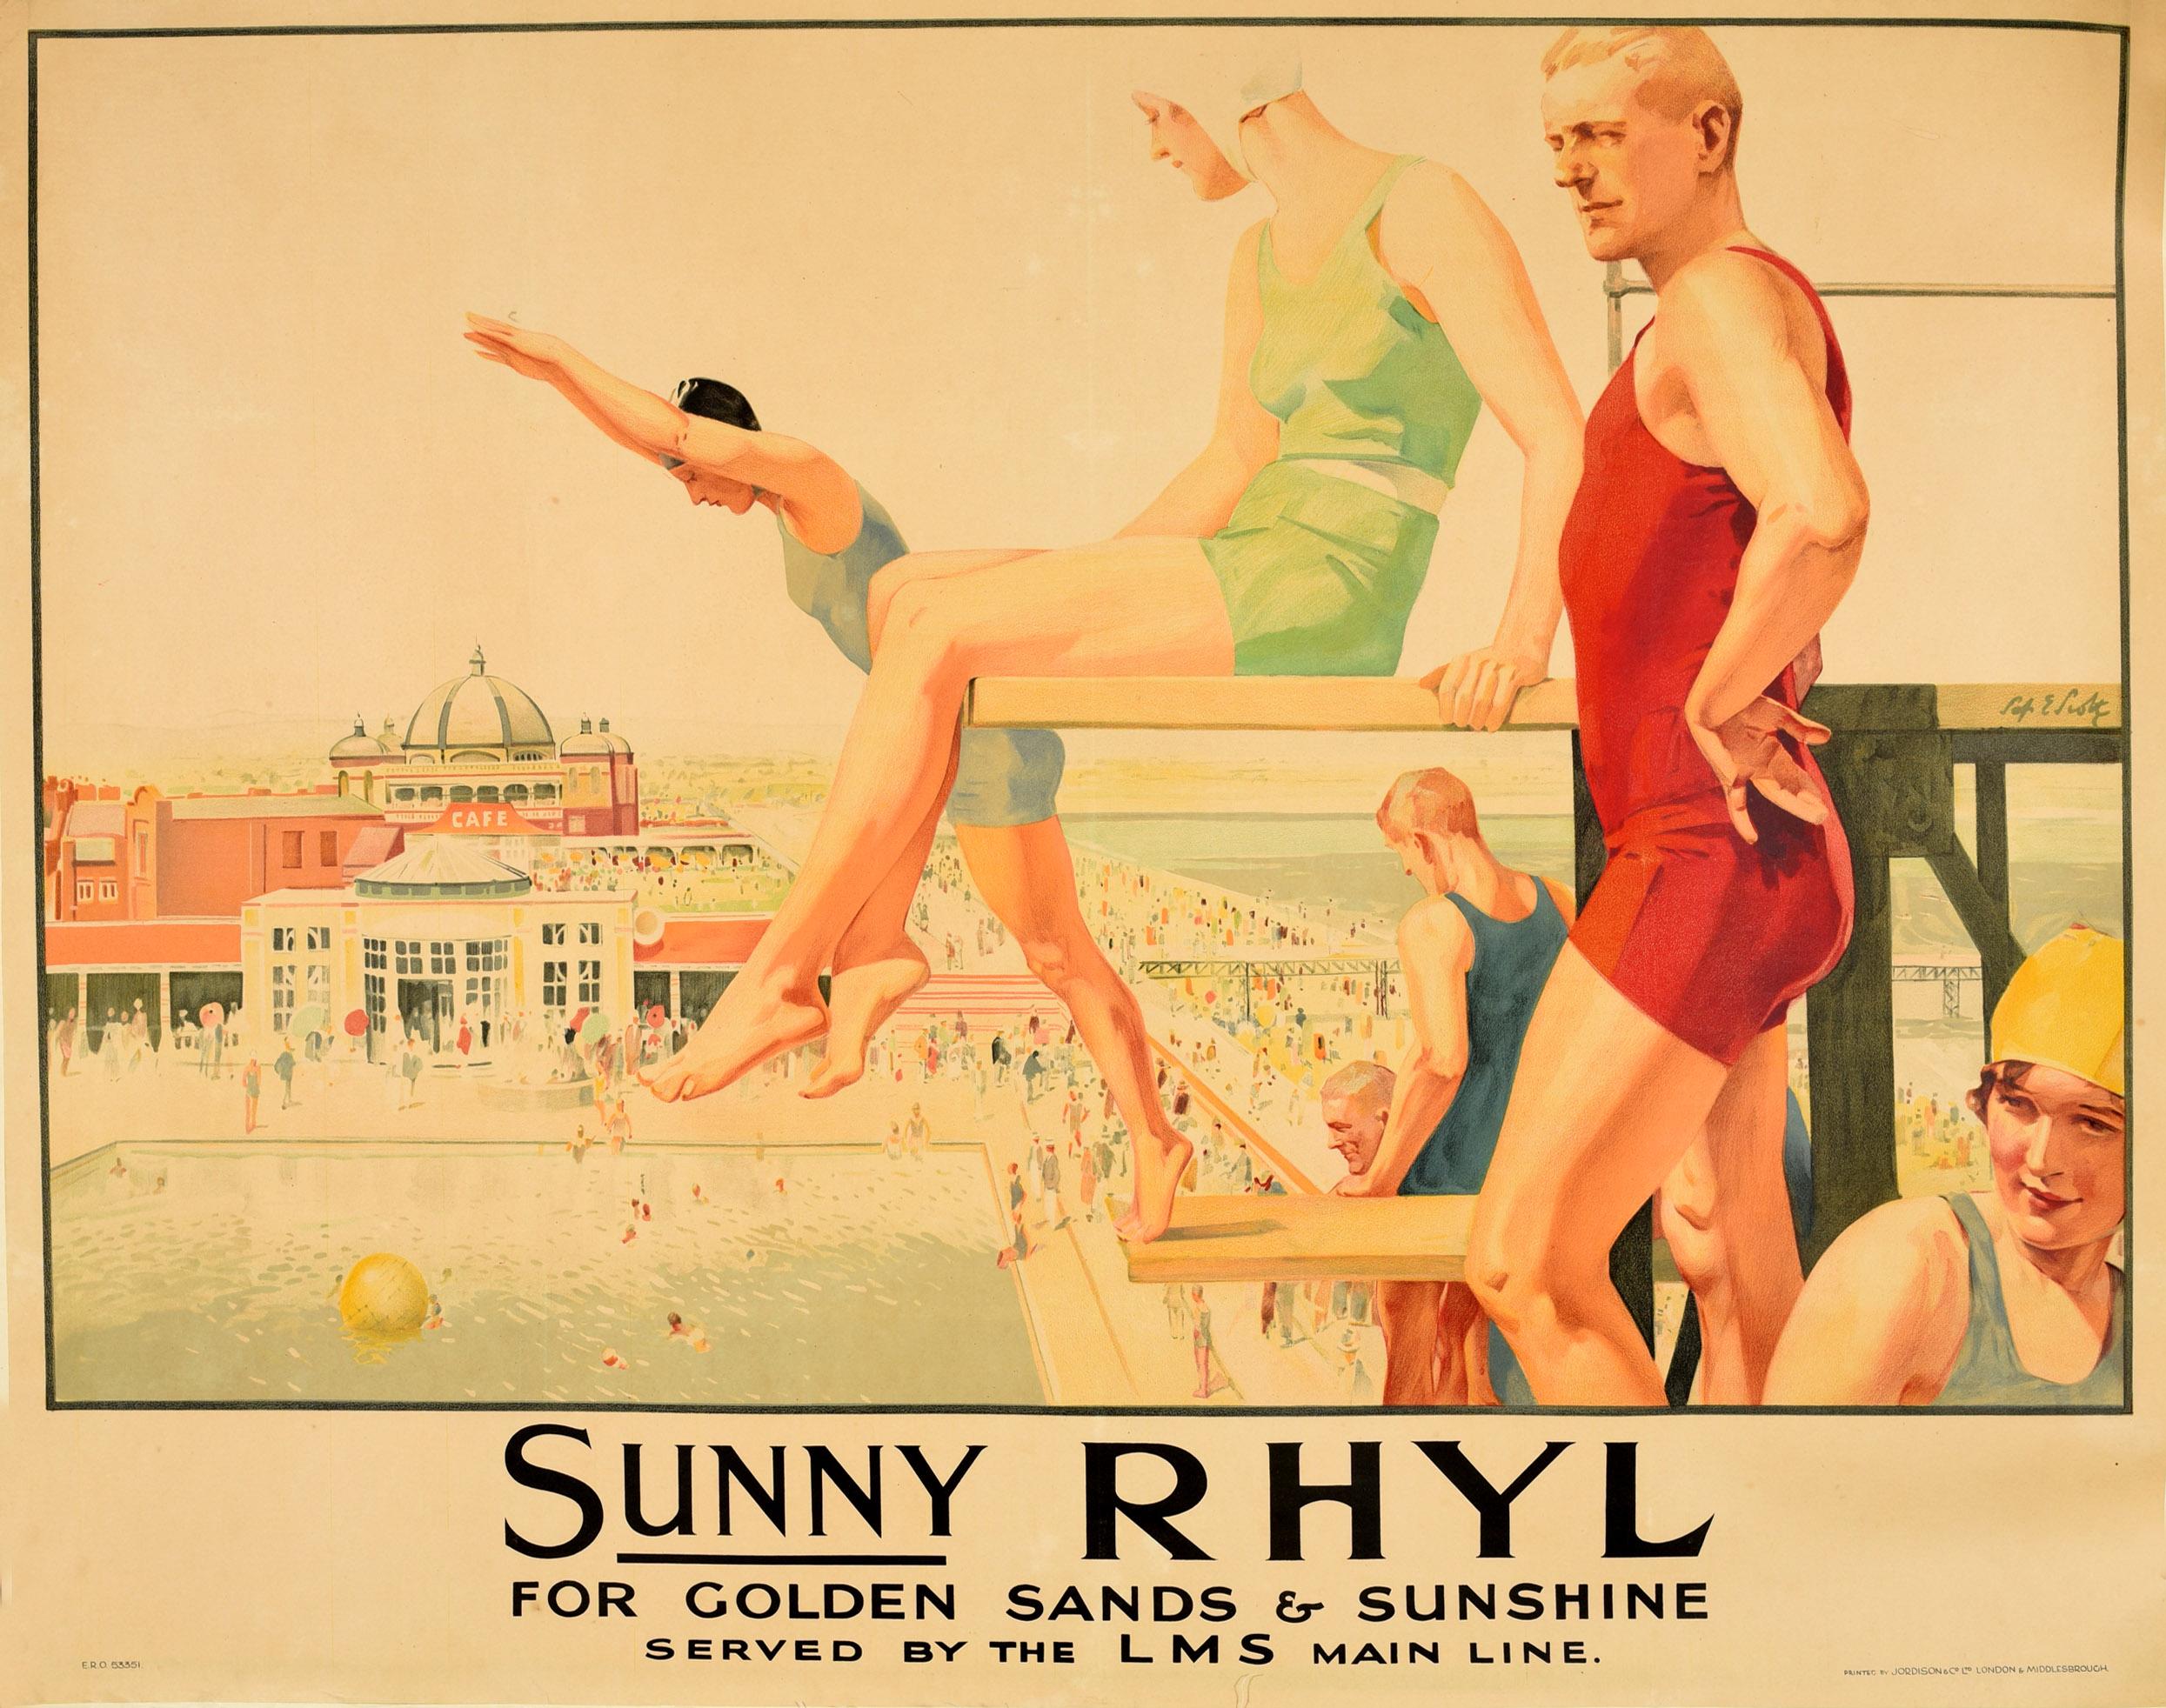 Original Vintage LMS Travel Poster Sunny Rhyl For Golden Sands & Sunshine Wales